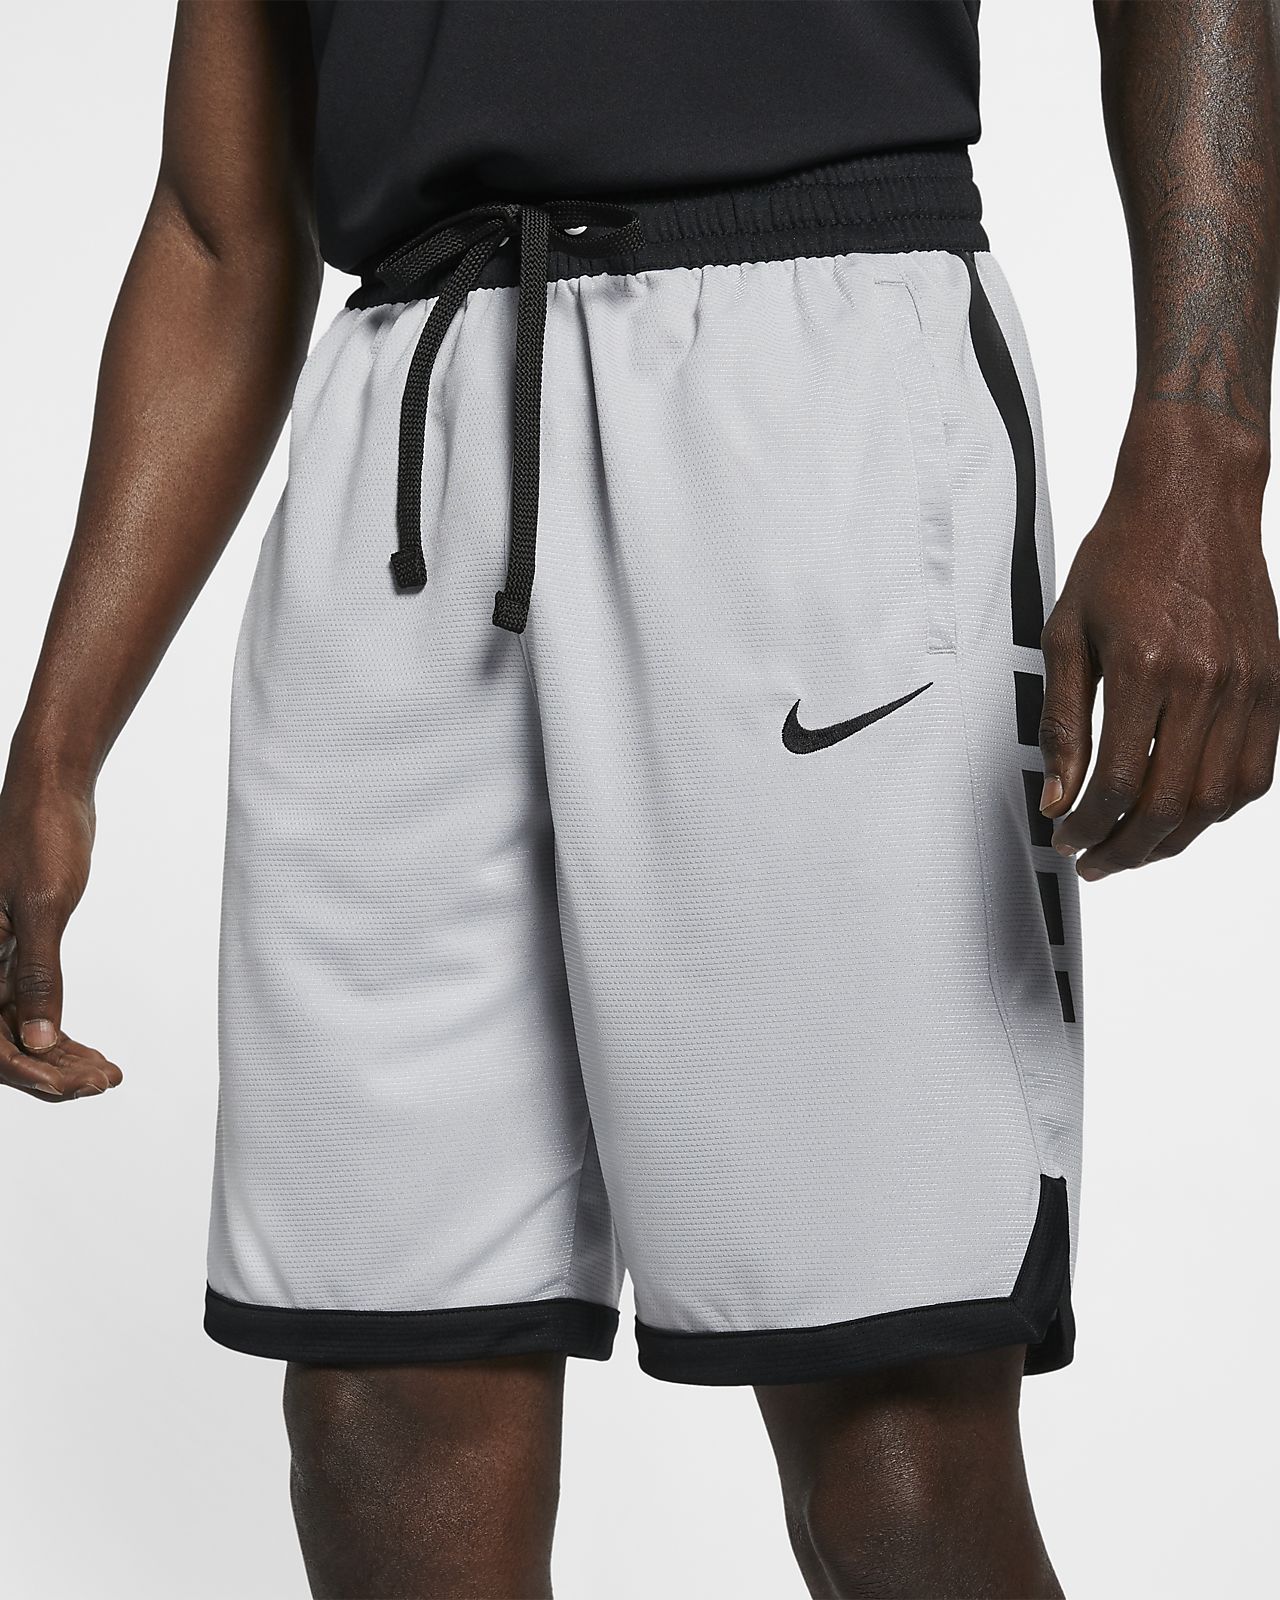 Шорты nike dri. Шорты Nike Dri Fit. Шорты Nike Dri Fit Basketball. Nike ACG Dri-Fit шорты. Шорты Nike Dri-Fit Basketball 3.0.